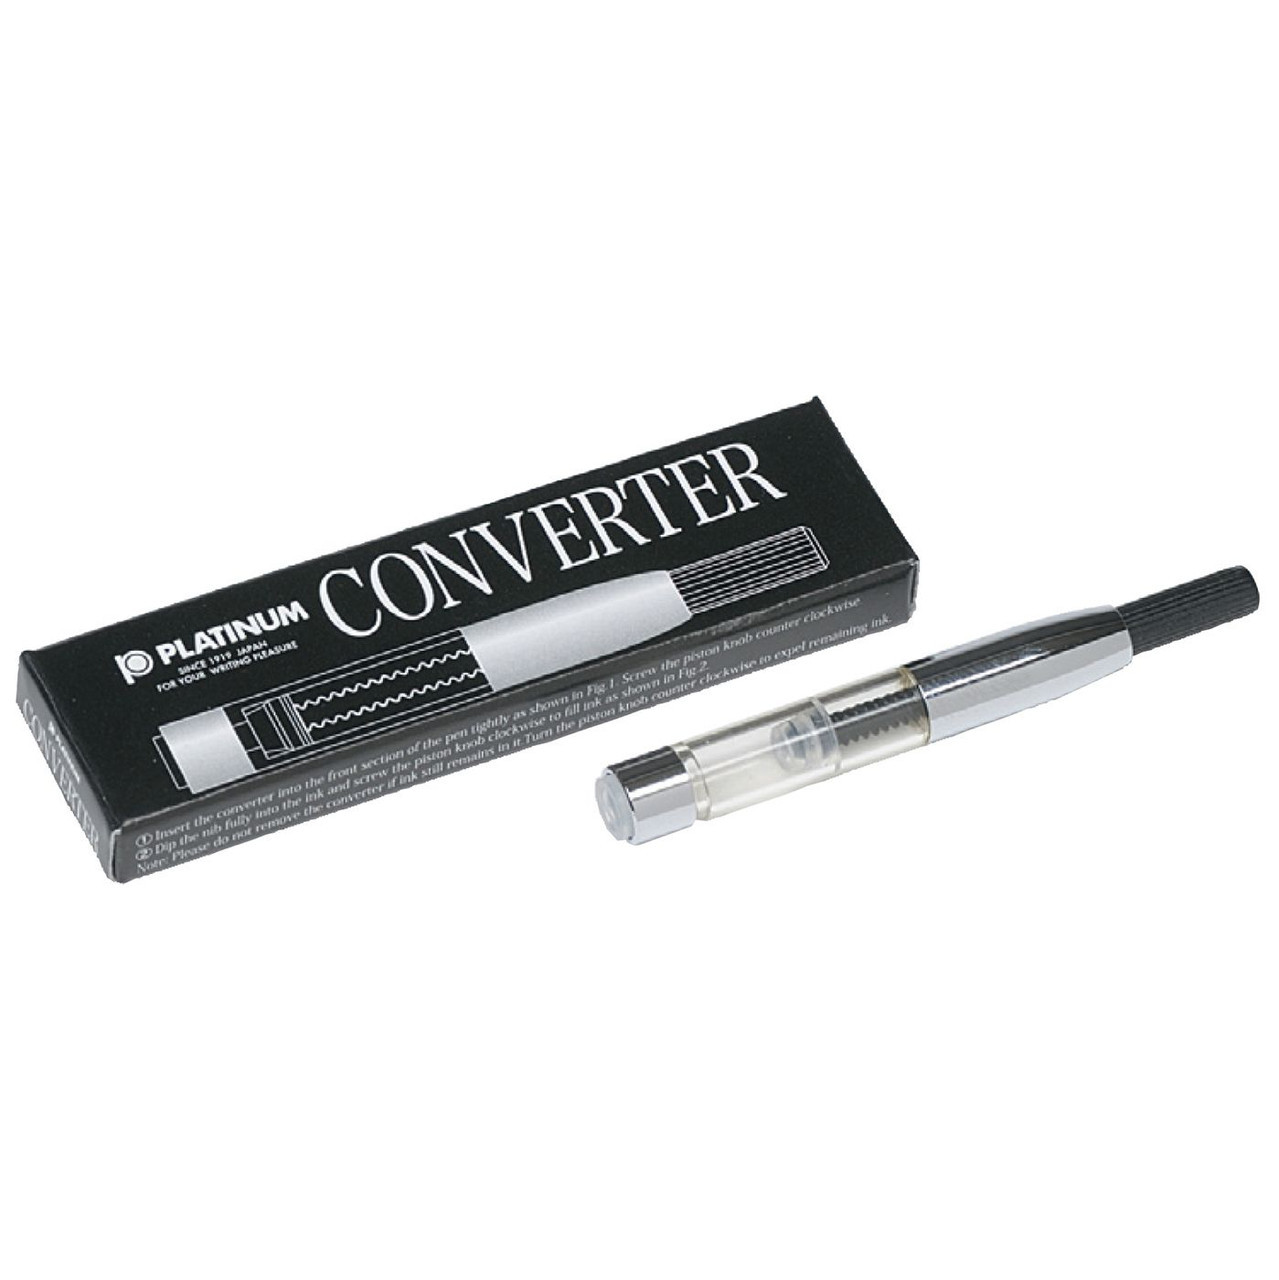 Platinum Converter Silver For Fountain Pen